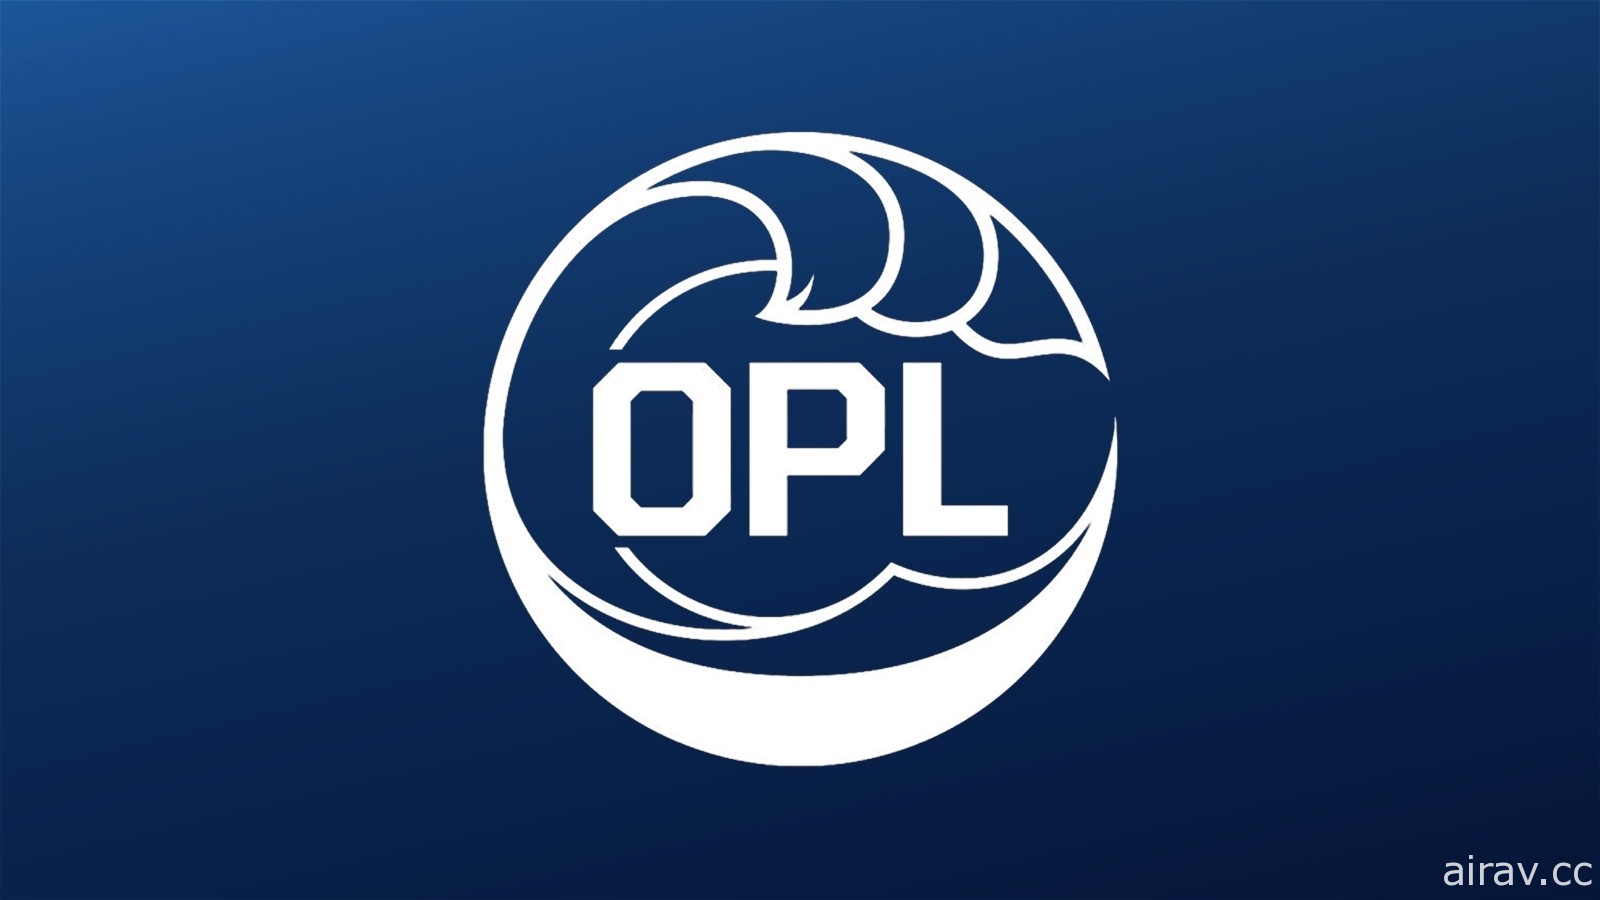 《英雄聯盟》宣布大洋洲職業聯賽 OPL 解散　2021 年賽季加入北美 LCS 賽區